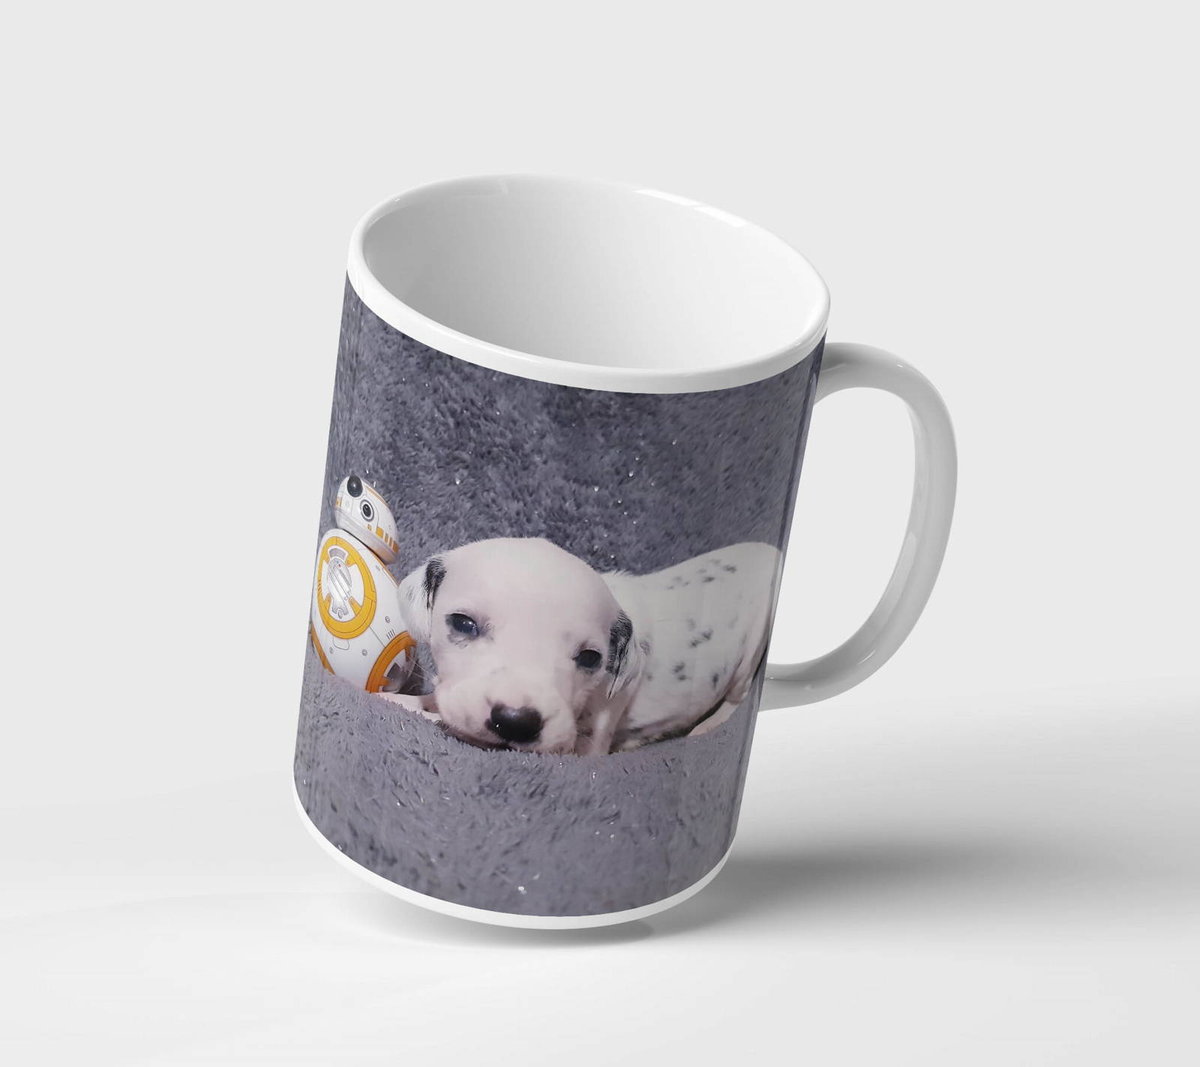 Kubek ceramiczny pies dalmatyńczyk i star wars